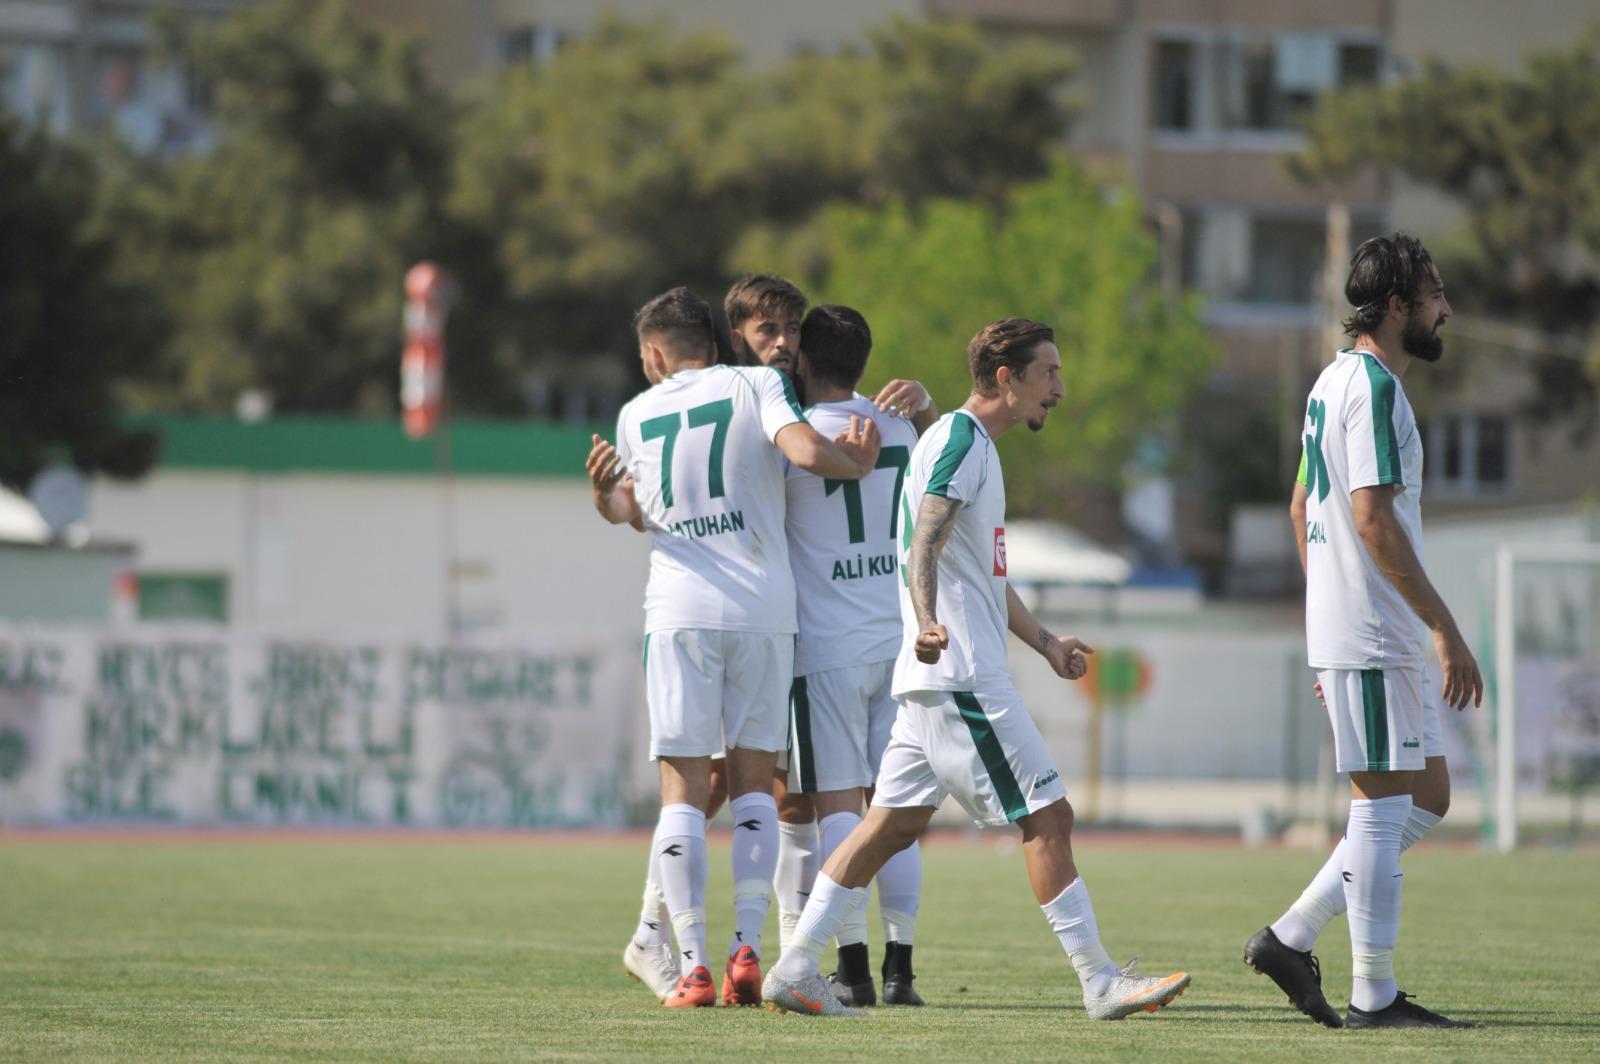 (ÖZET) Kırklarelispor - Kırşehir Belediyespor maç sonucu: 1-2